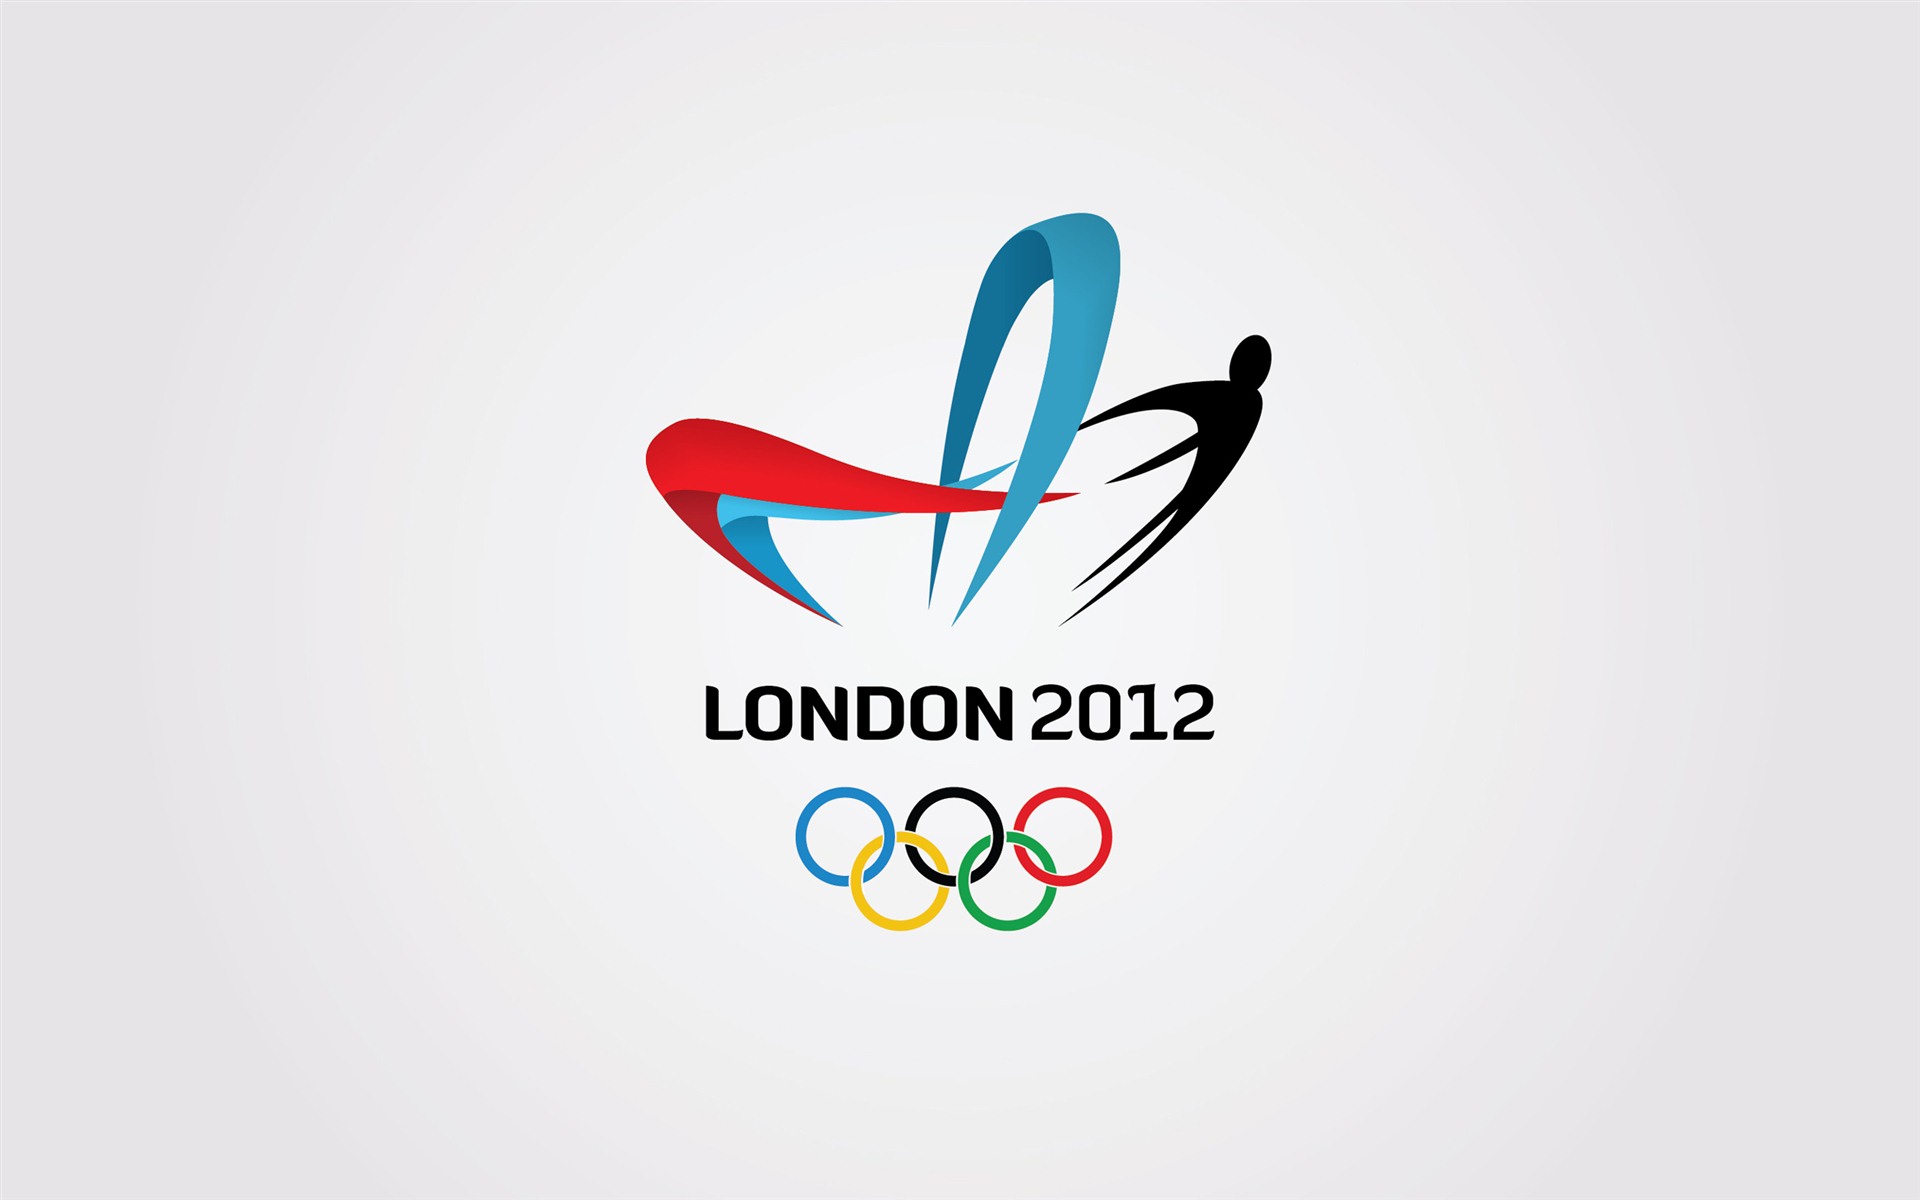 Londres 2012 Olimpiadas fondos temáticos (2) #25 - 1920x1200